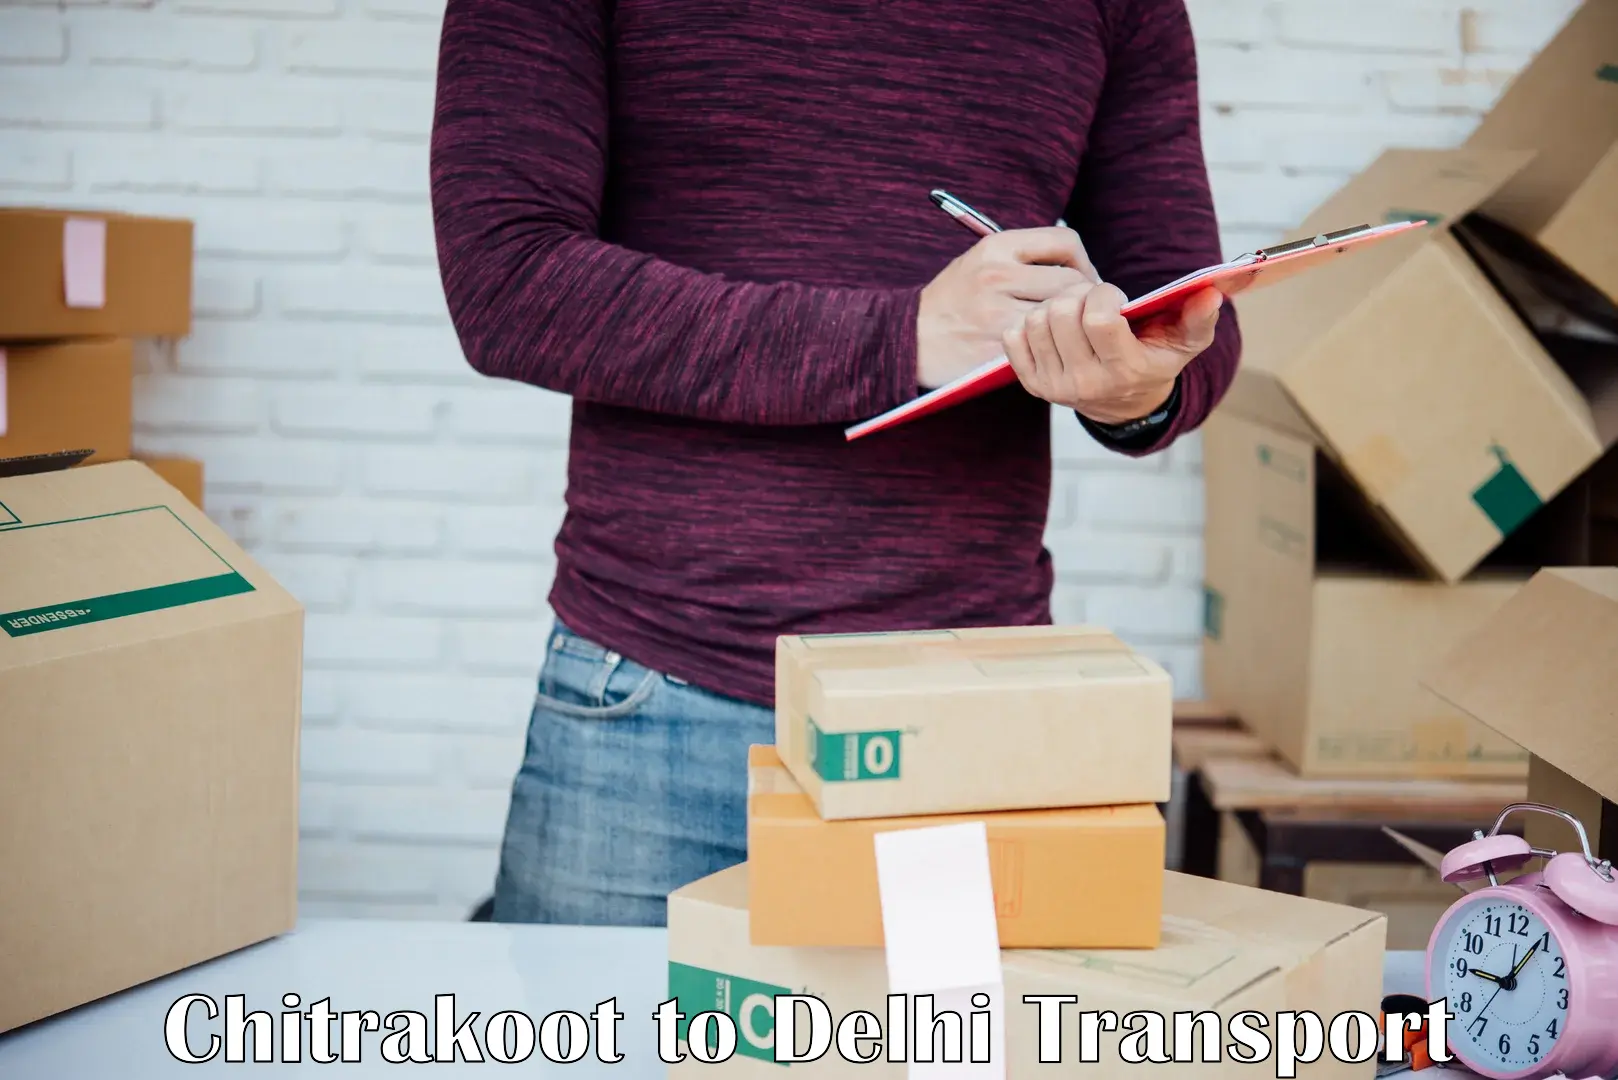 International cargo transportation services Chitrakoot to Delhi